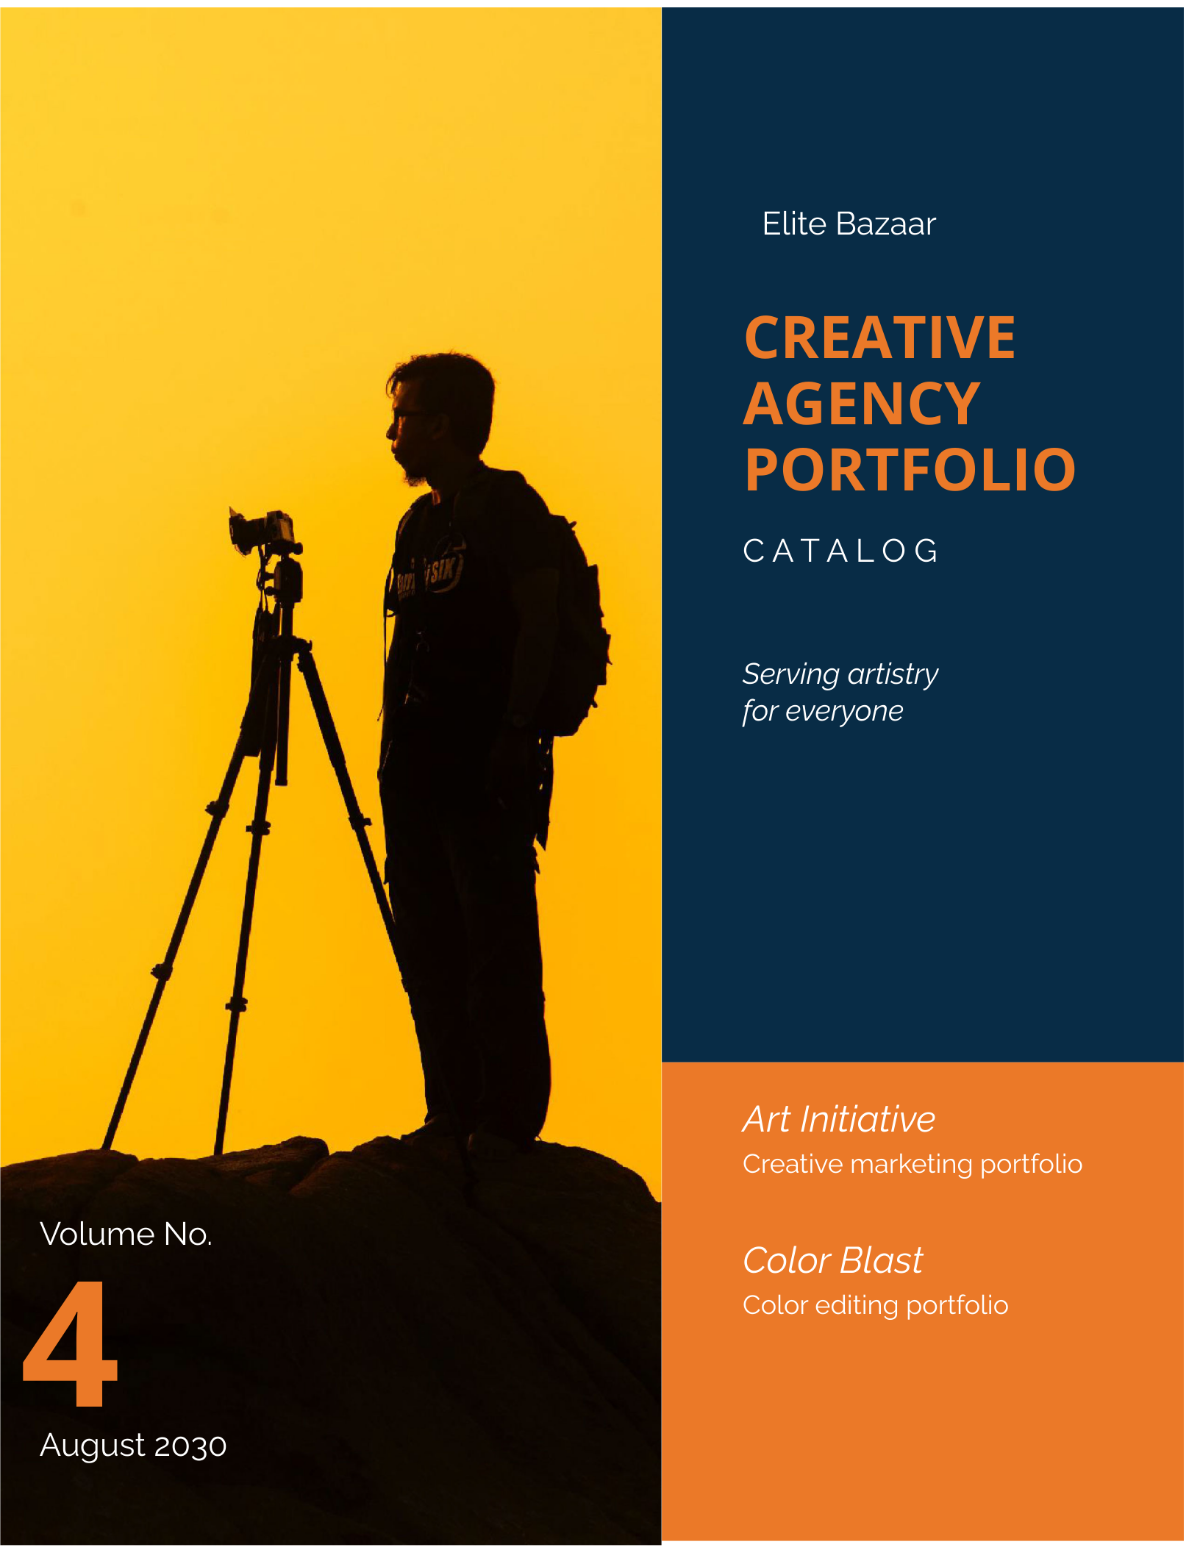 Creative Agency Portfolio Catalog